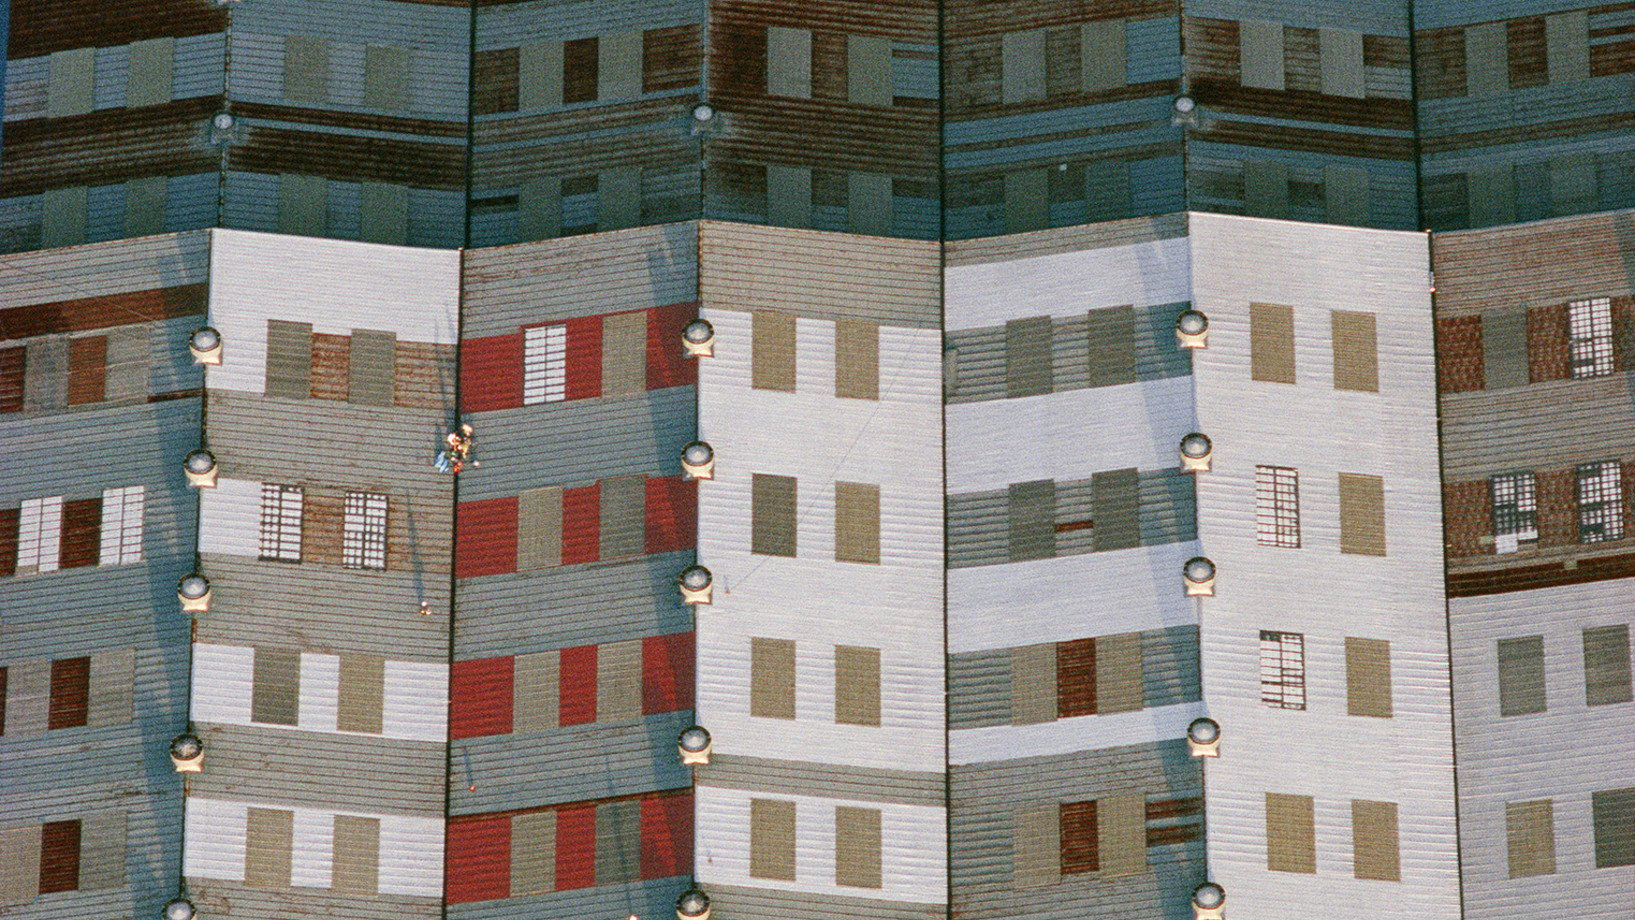 Dach einer Werkhalle in Yokohama, Japan 1982. Der Augenschein täuscht: nicht Ansicht ist Sache, sondern Aufsicht. Nicht die Fassade eines Hochhauses, sondern der Ausschnitt eines Industriedachs. Für Farbe sorgt der Anstrich, der das Blechdach vor Korrosion schützt. Ventilatoren auf den Dachfirsten für Belüftung und Entlüftung sowie durchscheinende Paneele, die Tageslichtflächen im Dach, sind weitere graphische Bildelemente,

(Copyright Georg Gerster/Keystone)

http://www.georggerster.com/